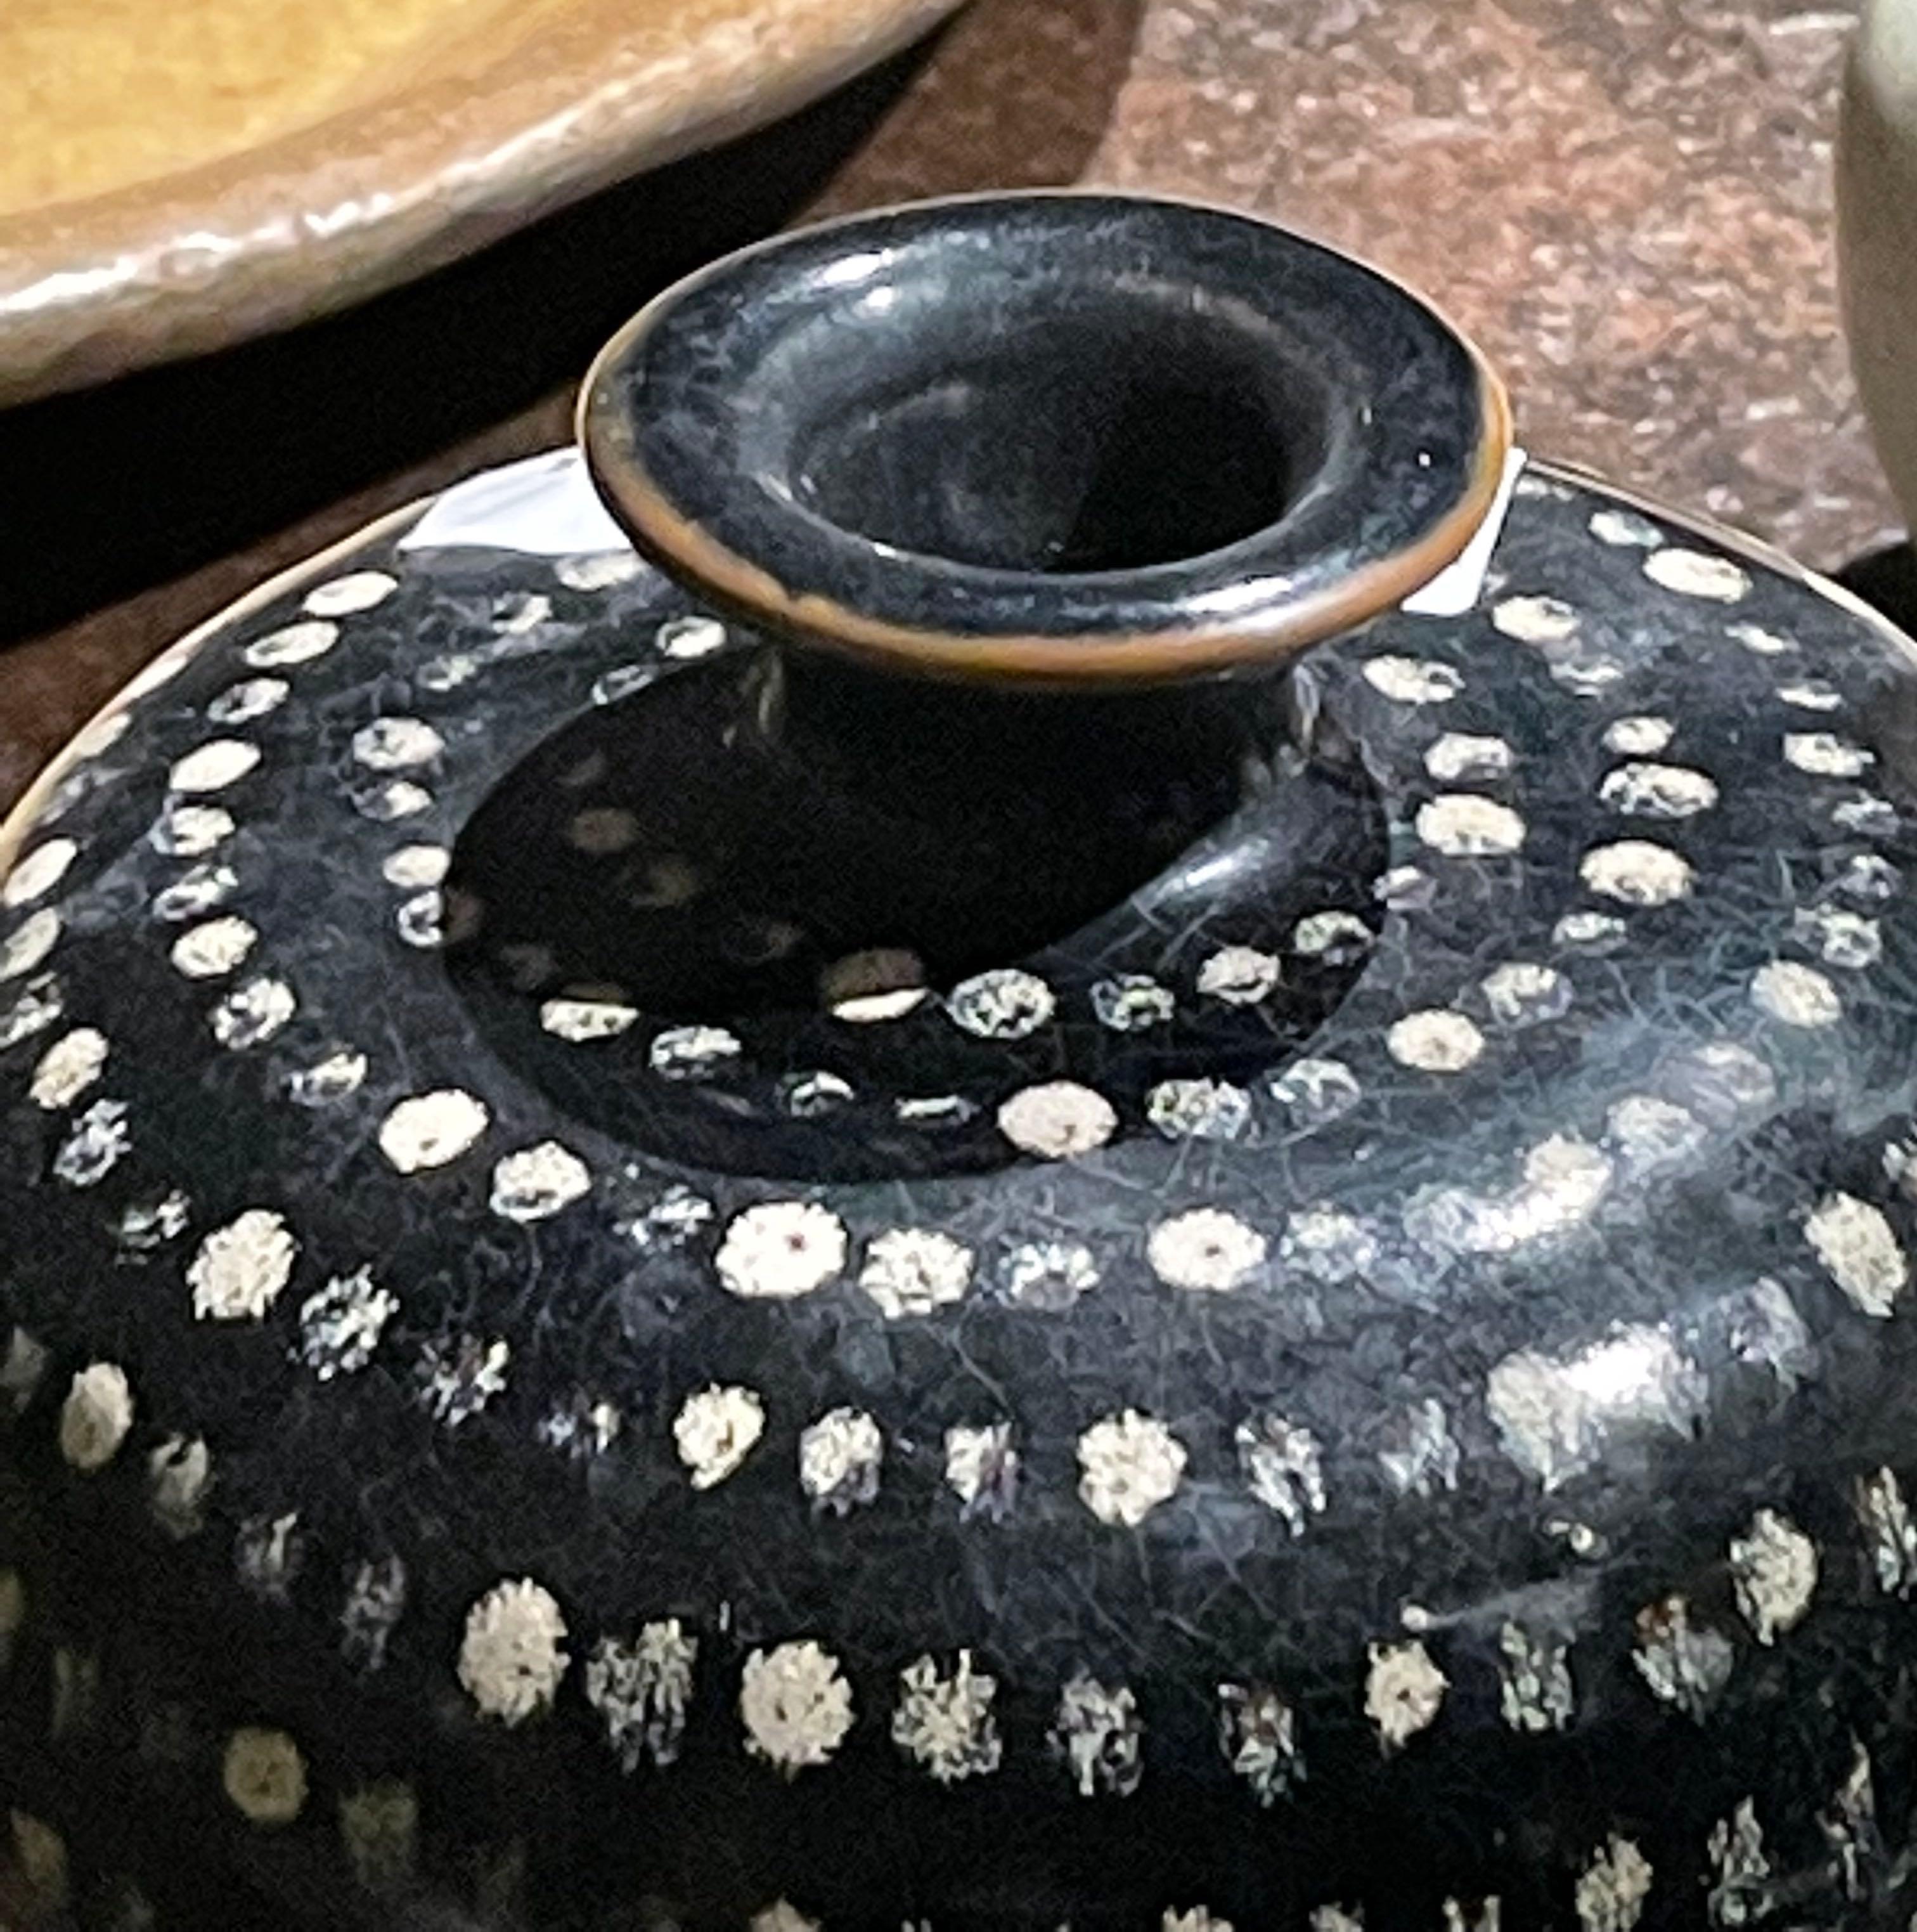 Zeitgenössische chinesische Keramikvase in Schwarz mit cremefarbenen Punkten.
Geschwungene und formschöne Vase.
Zwei davon sind erhältlich und werden einzeln verkauft.
Teil einer großen Collection'S.
 